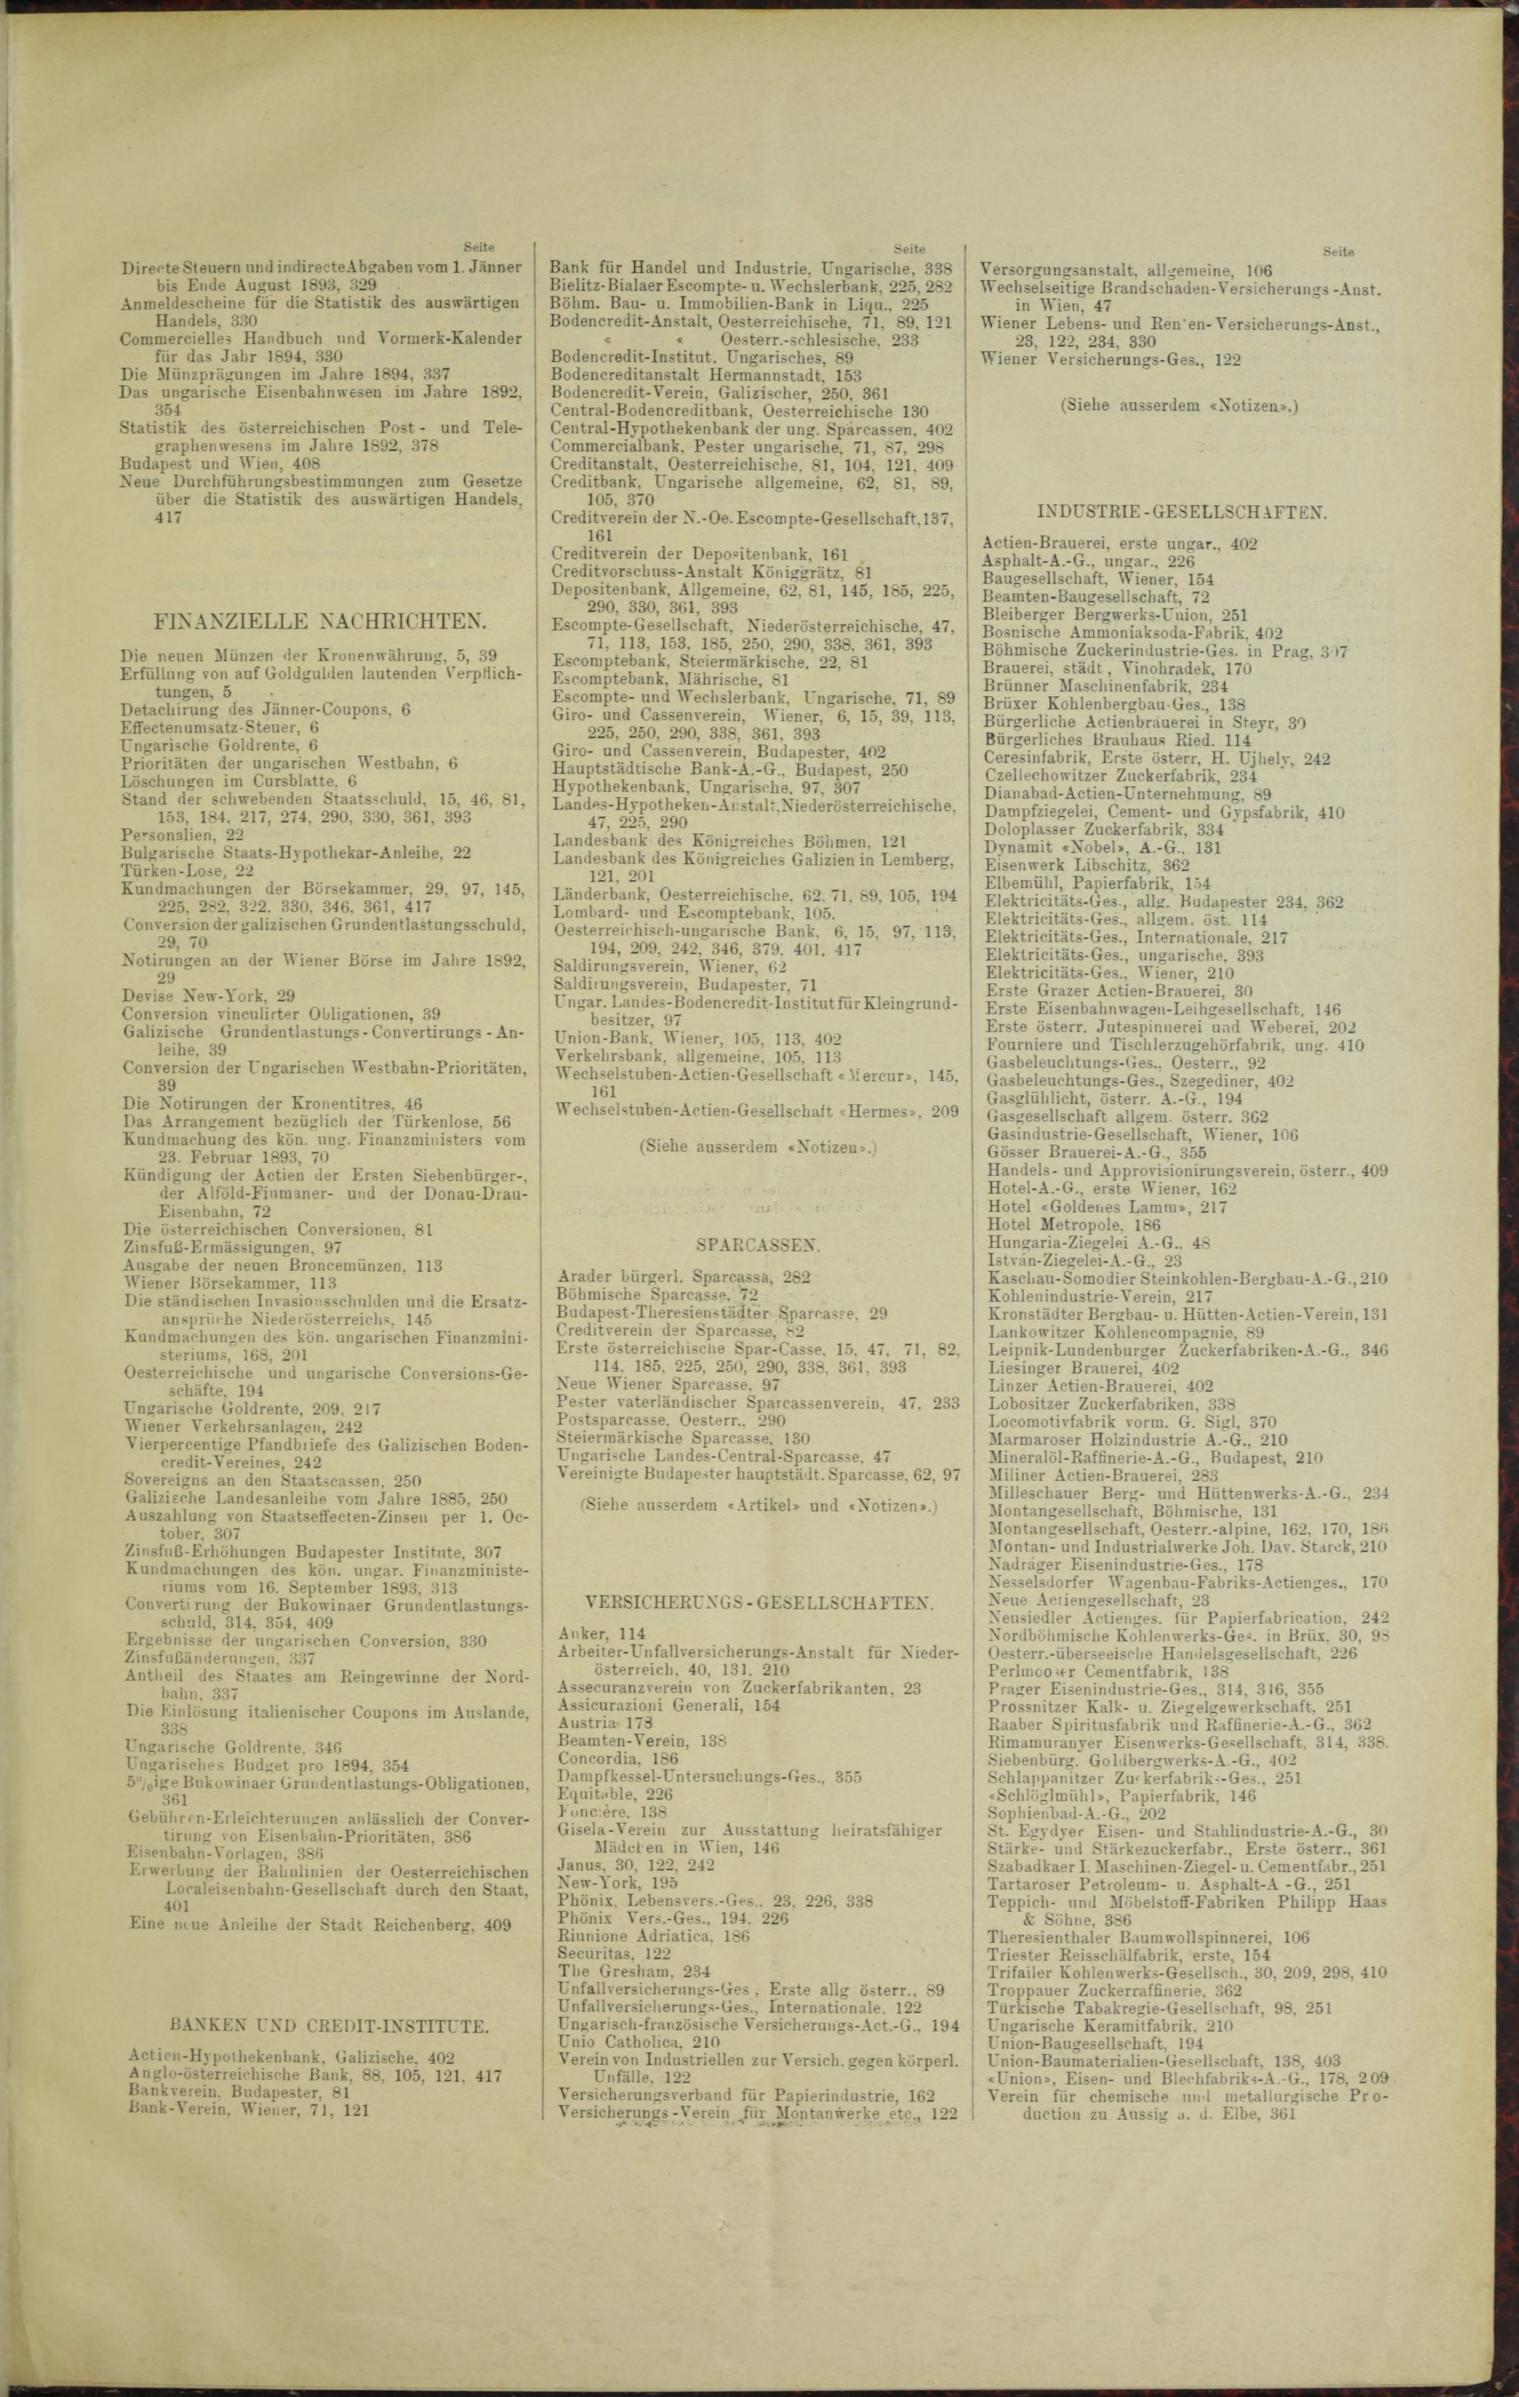 Der Tresor 26.01.1893 - Seite 13